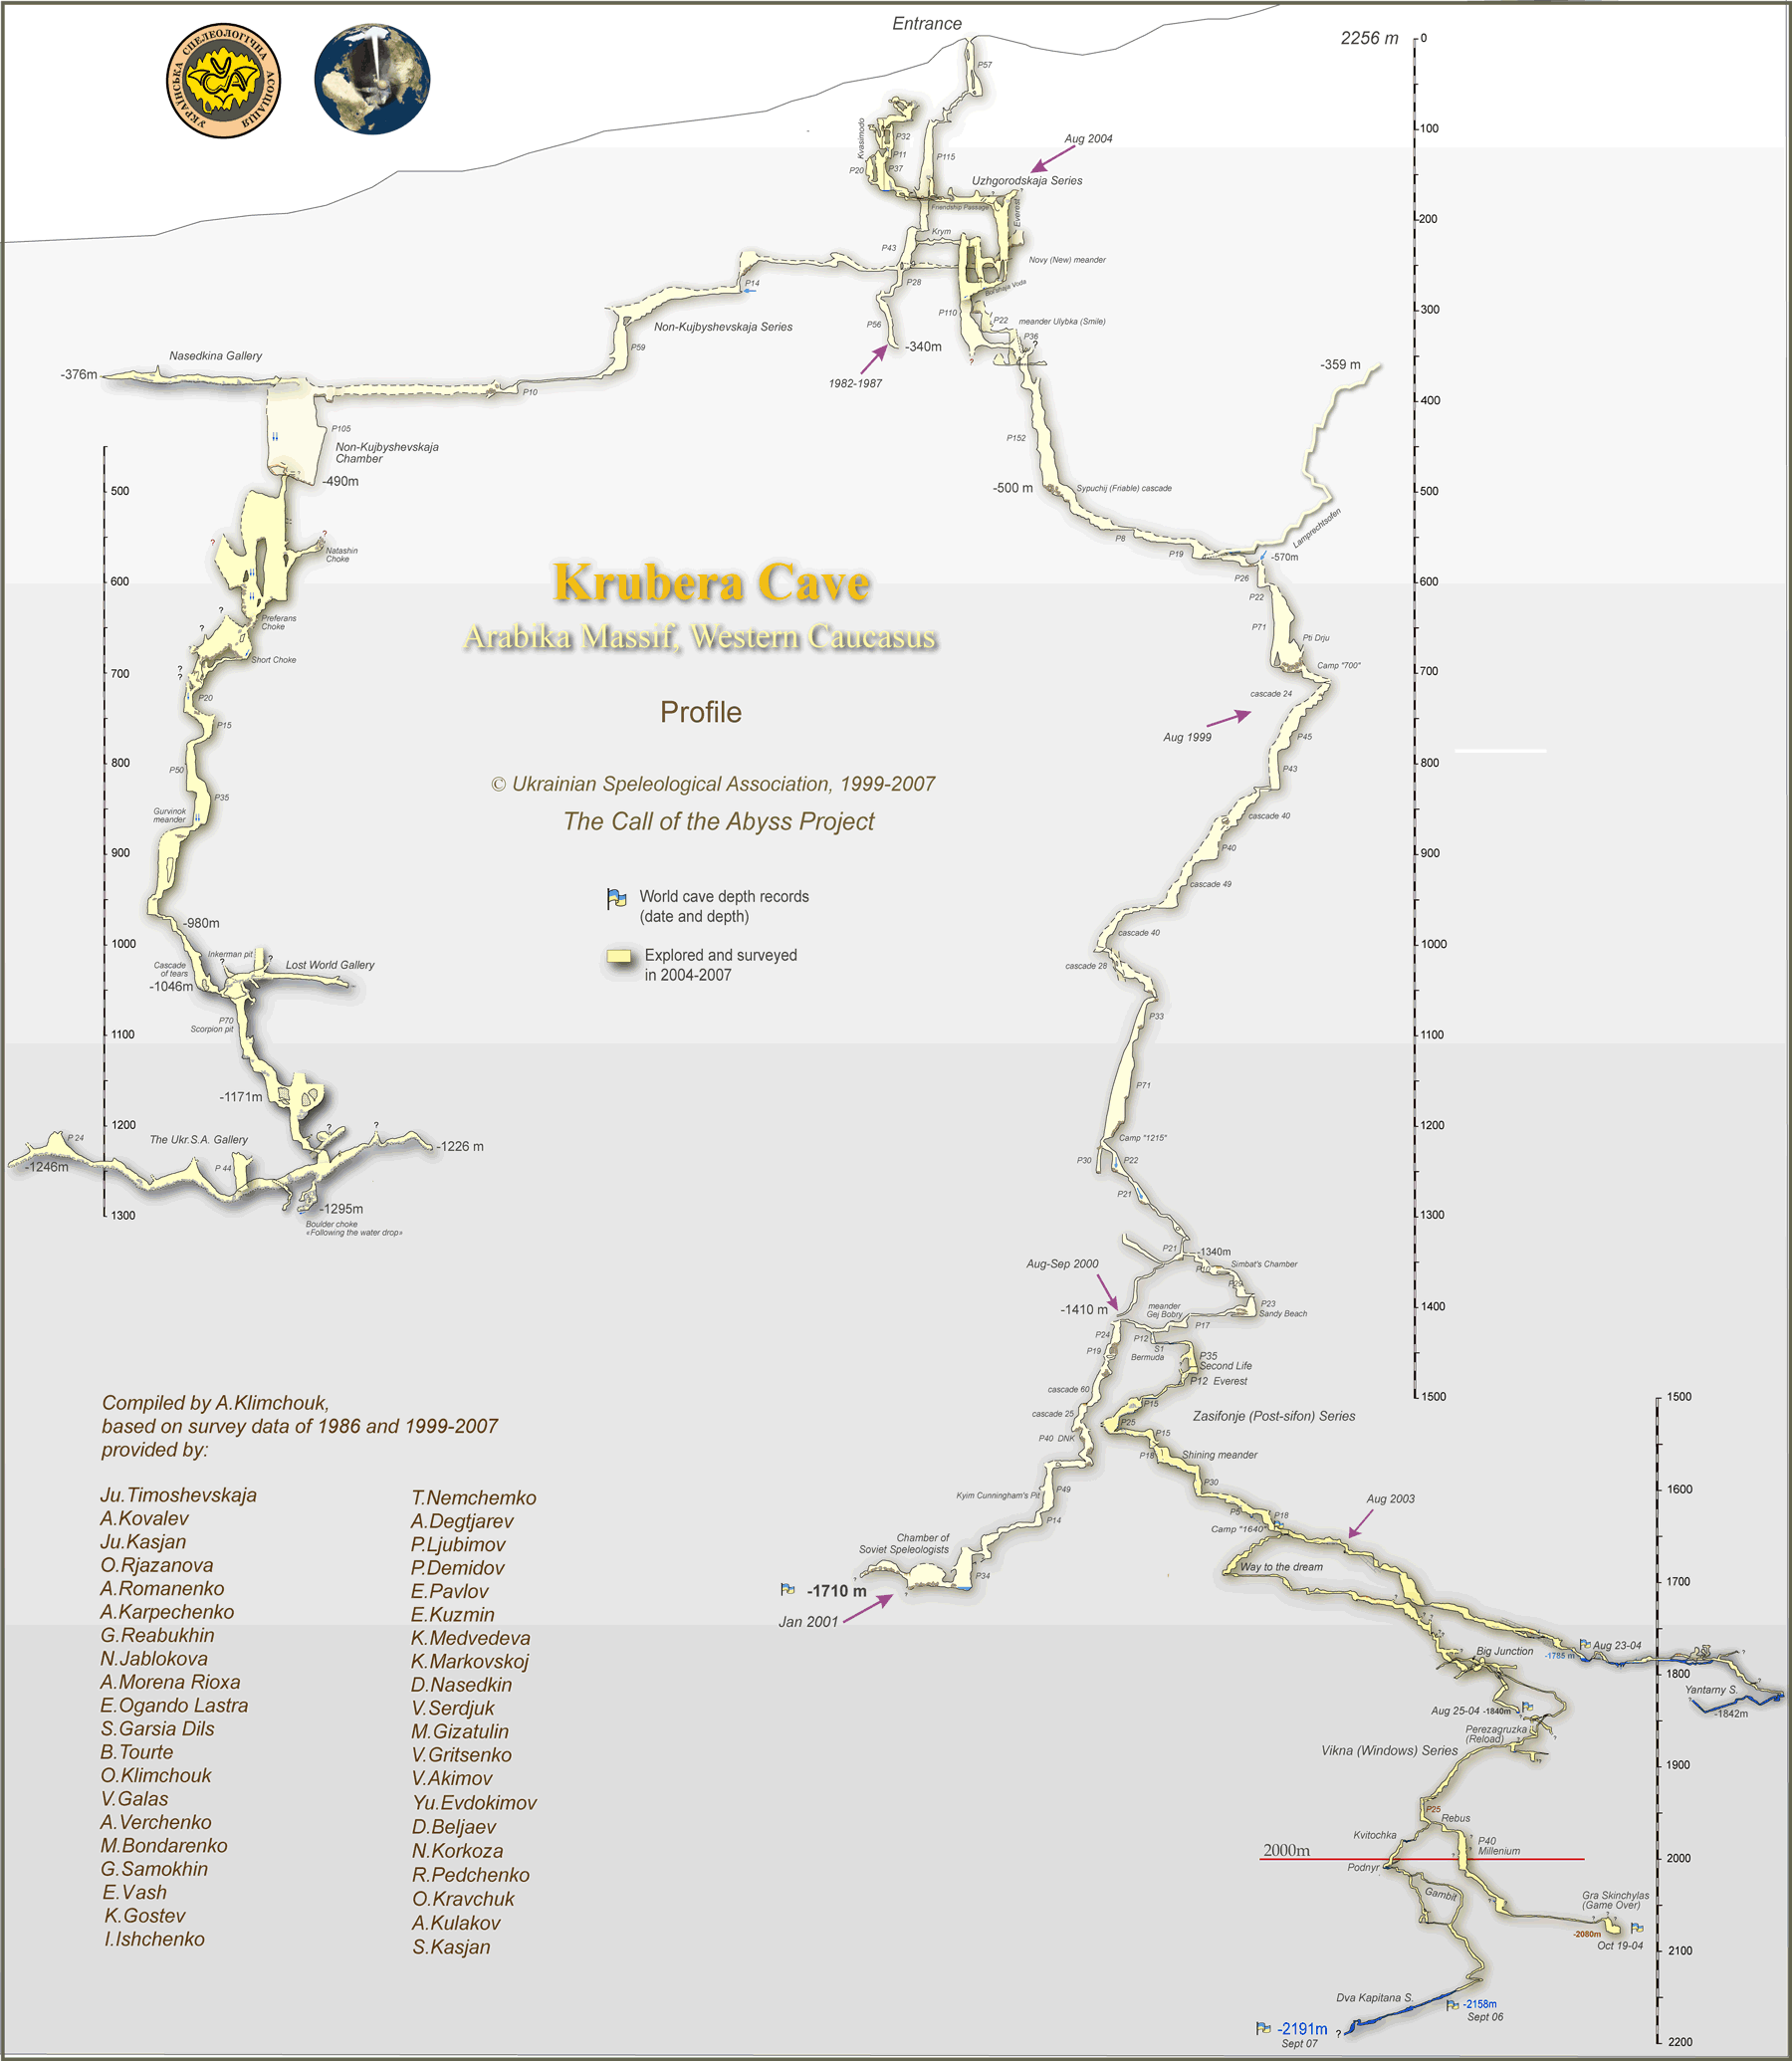 Krubera, a caverna mais profunda do mundo 20